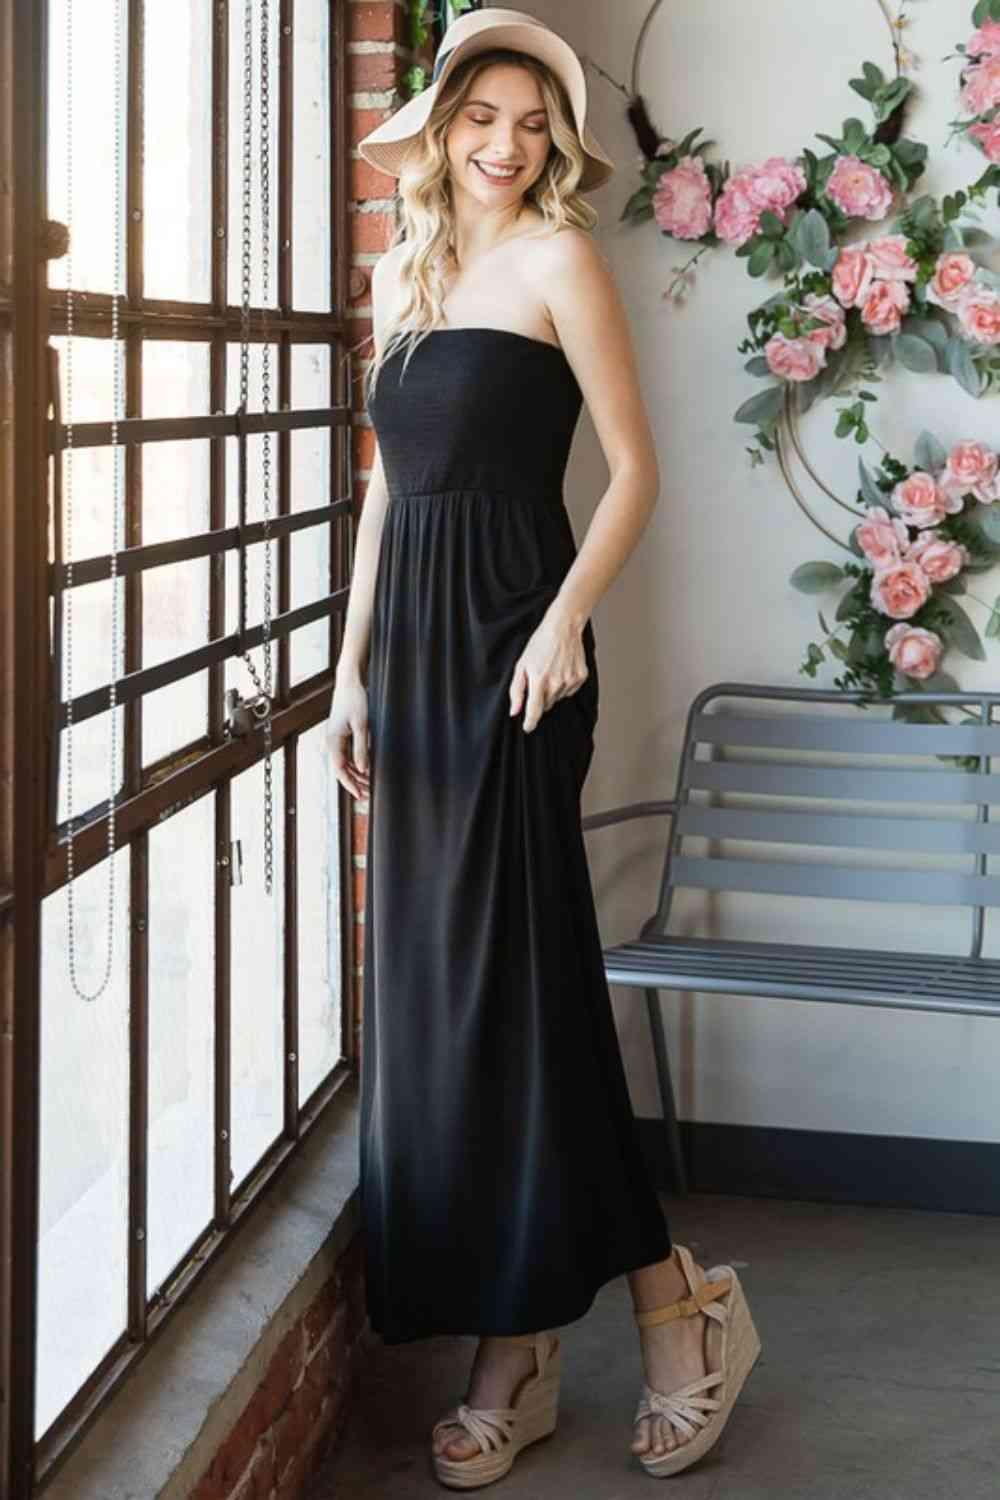 Heimish Full Size Strapless Maxi Dress - AMIClubwear